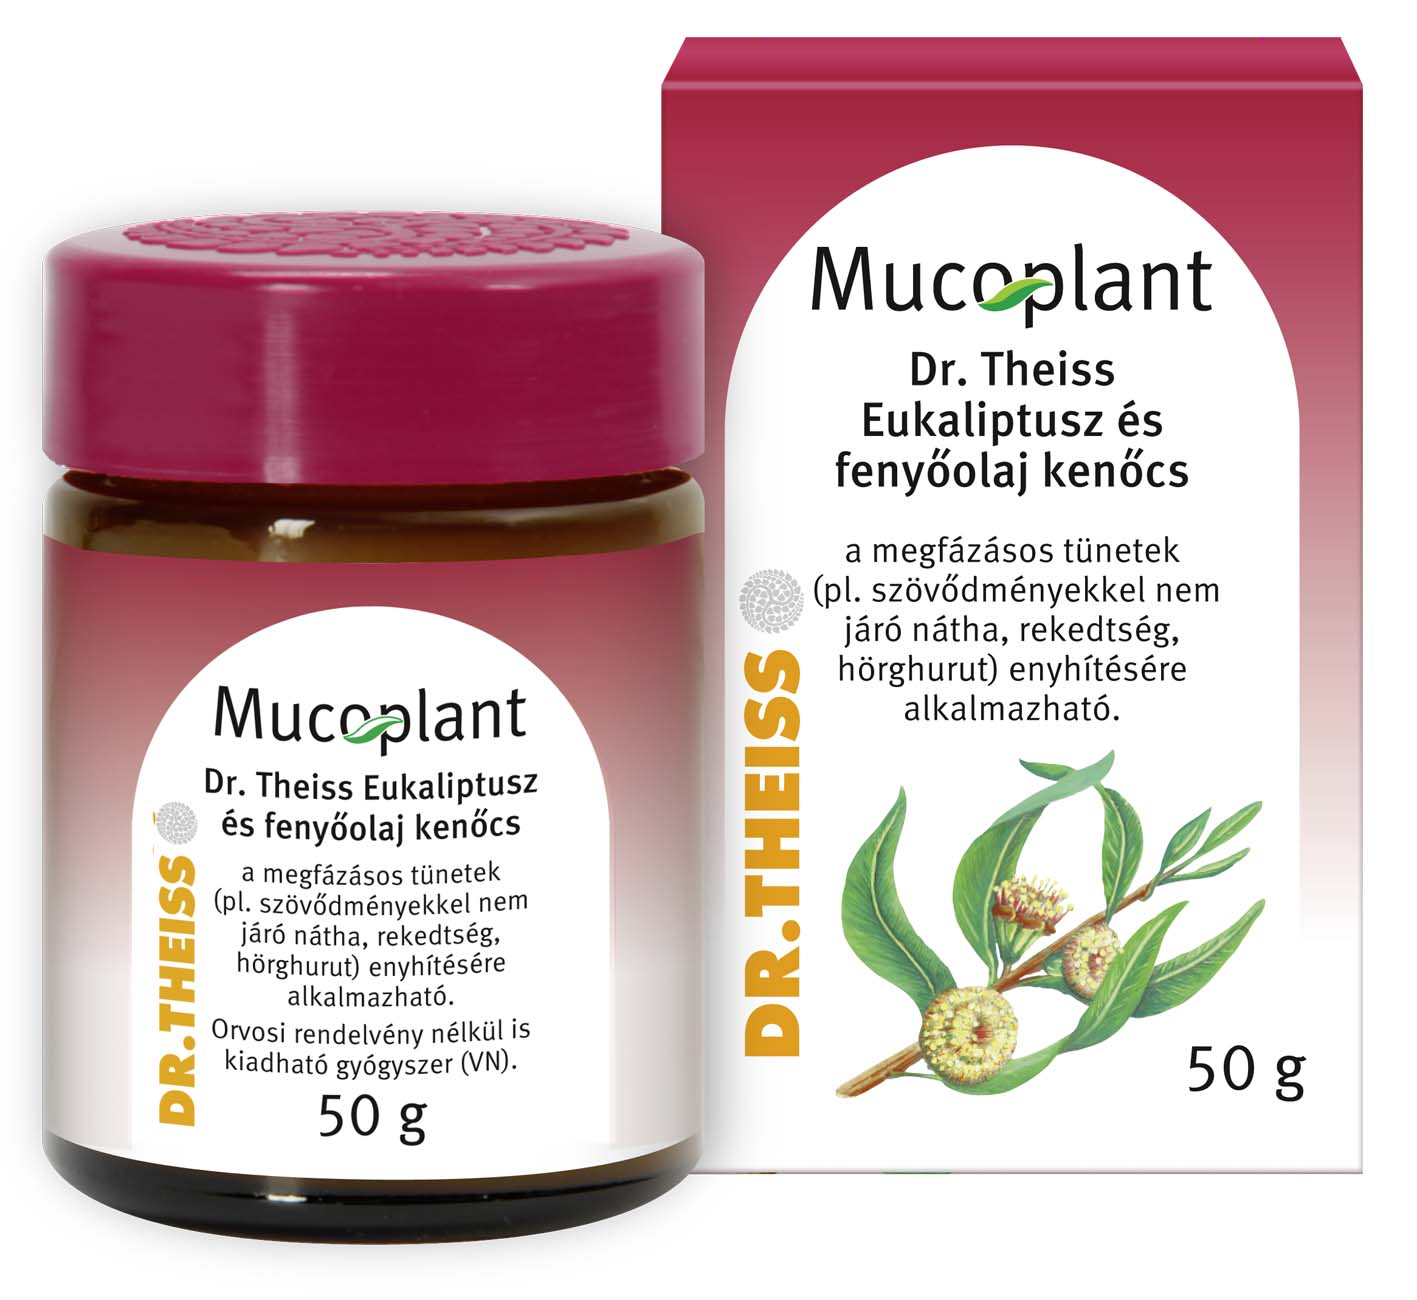 Mucoplant Dr Theiss eukaliptusz + fenyőolaj kenőcs